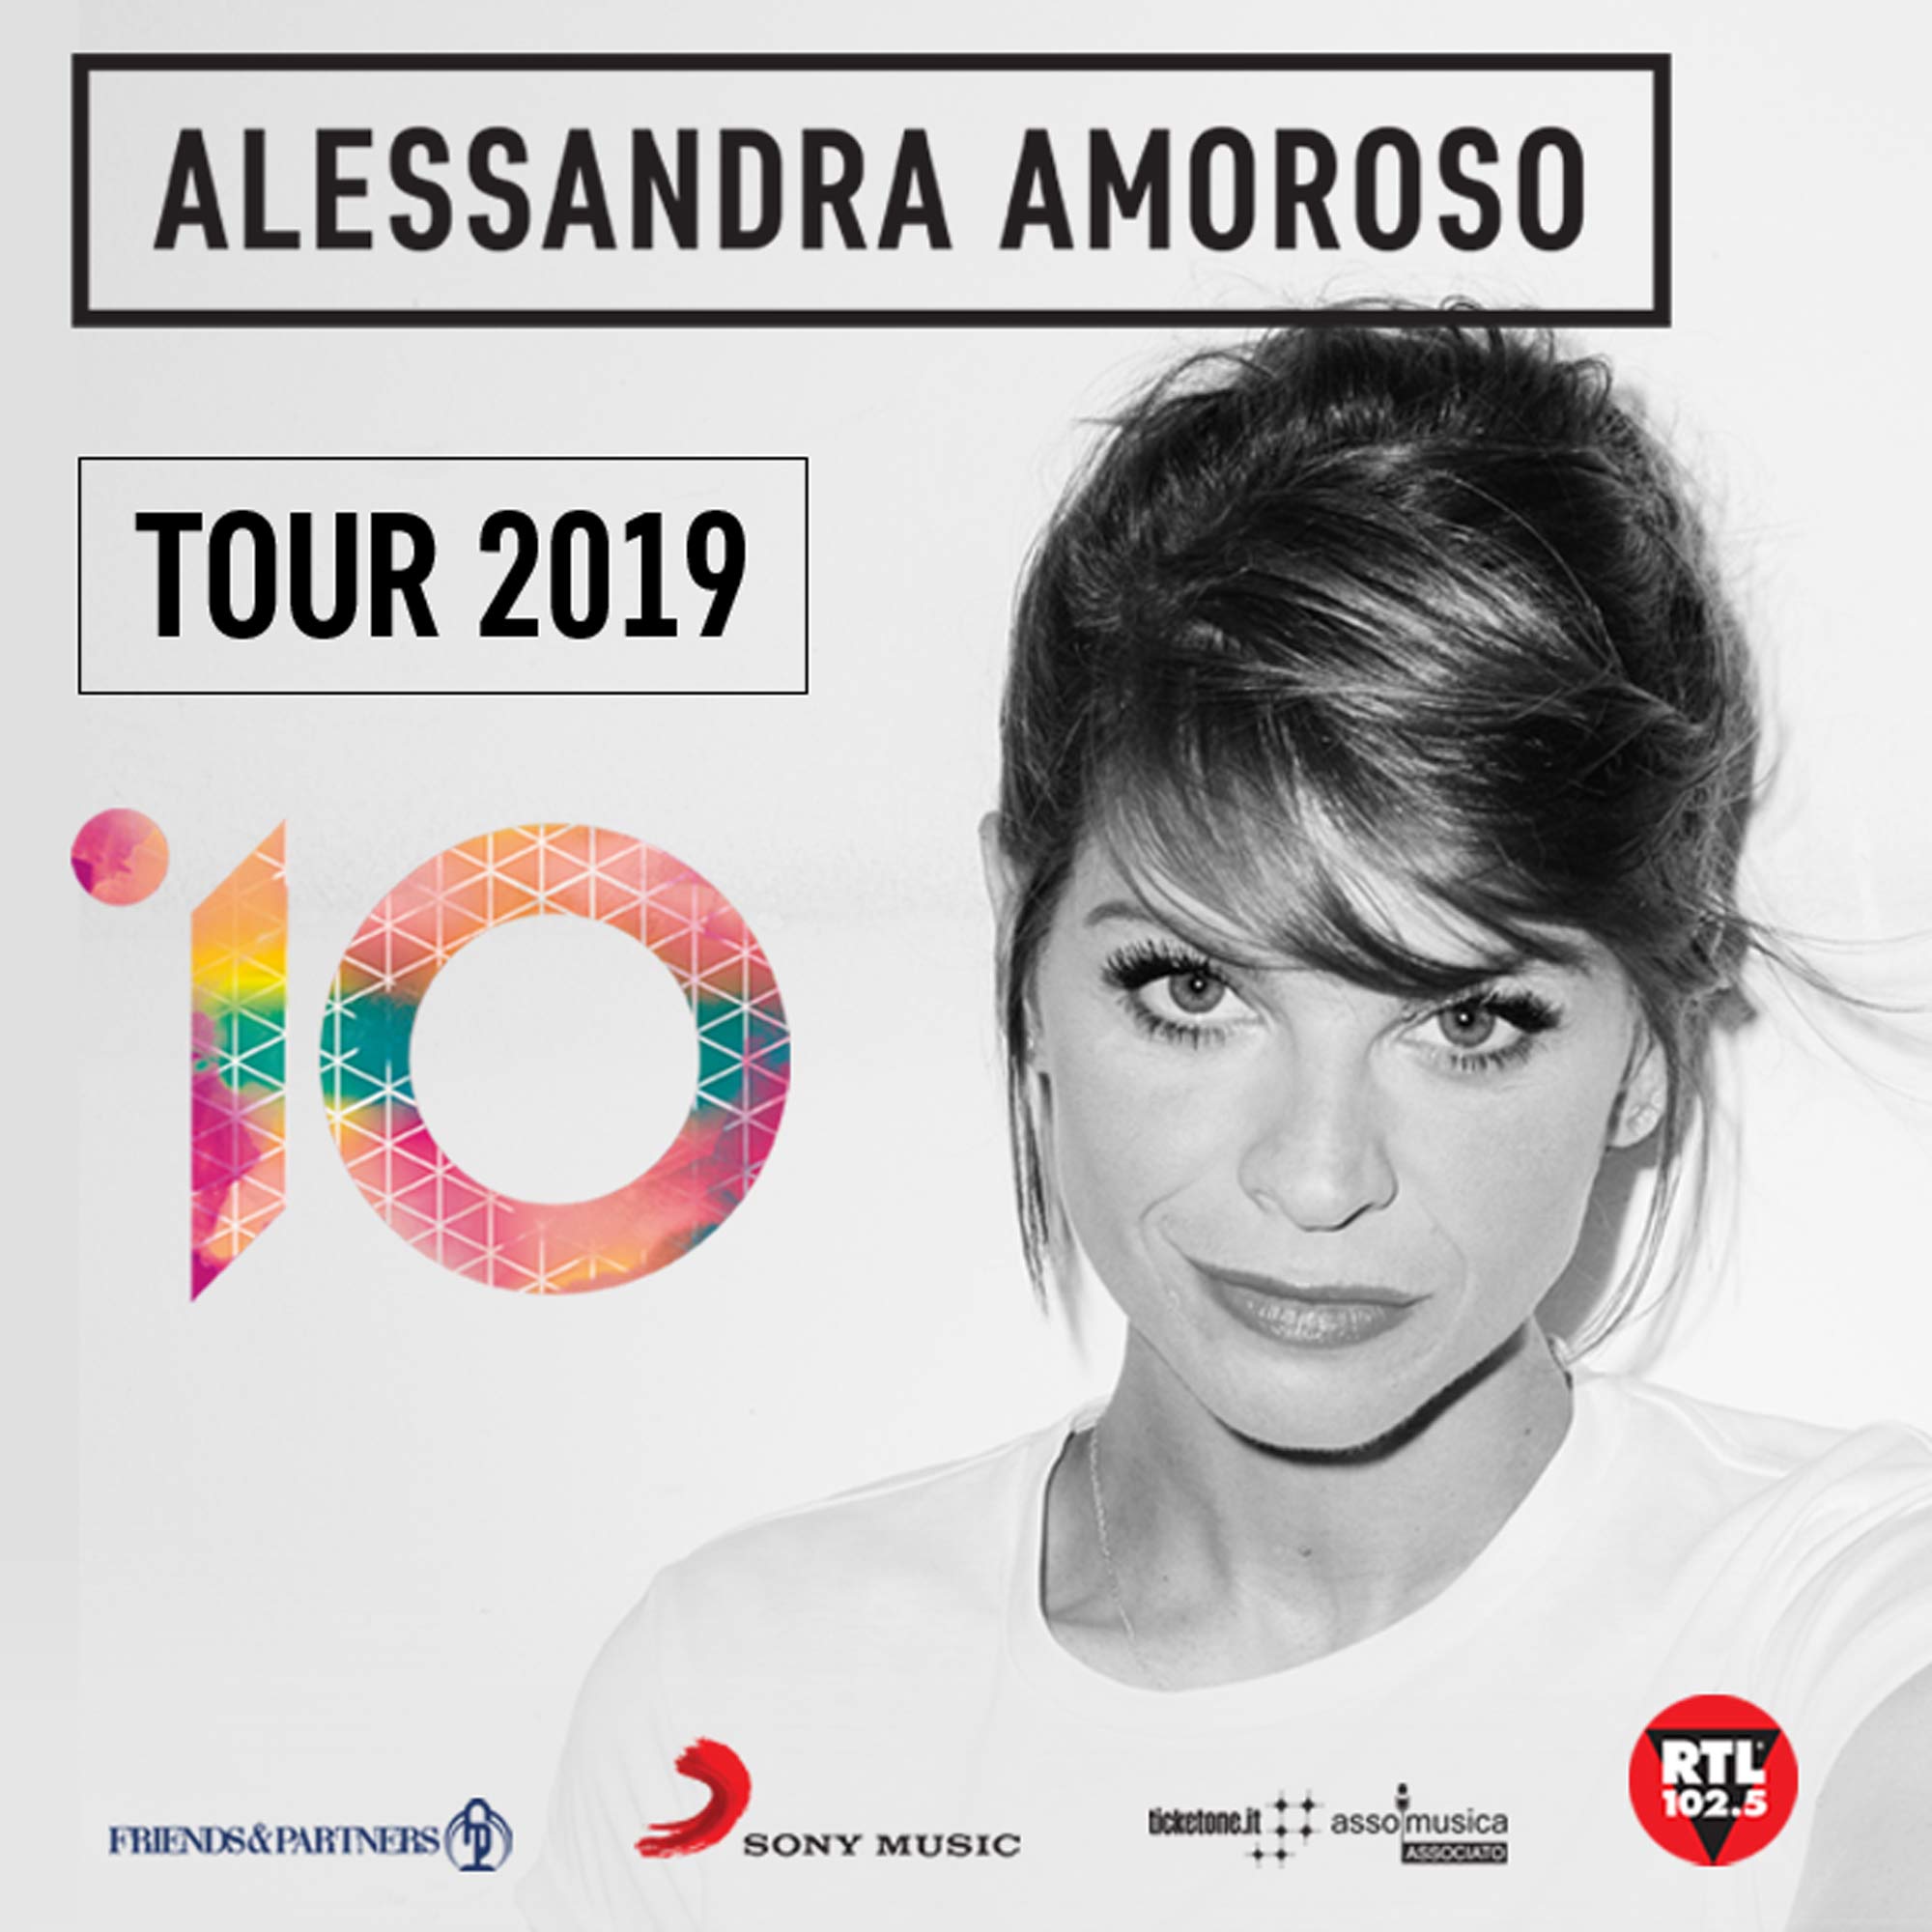 Alessandra Amoroso al PalaSele di Eboli, il 23 marzo con 10 TOUR